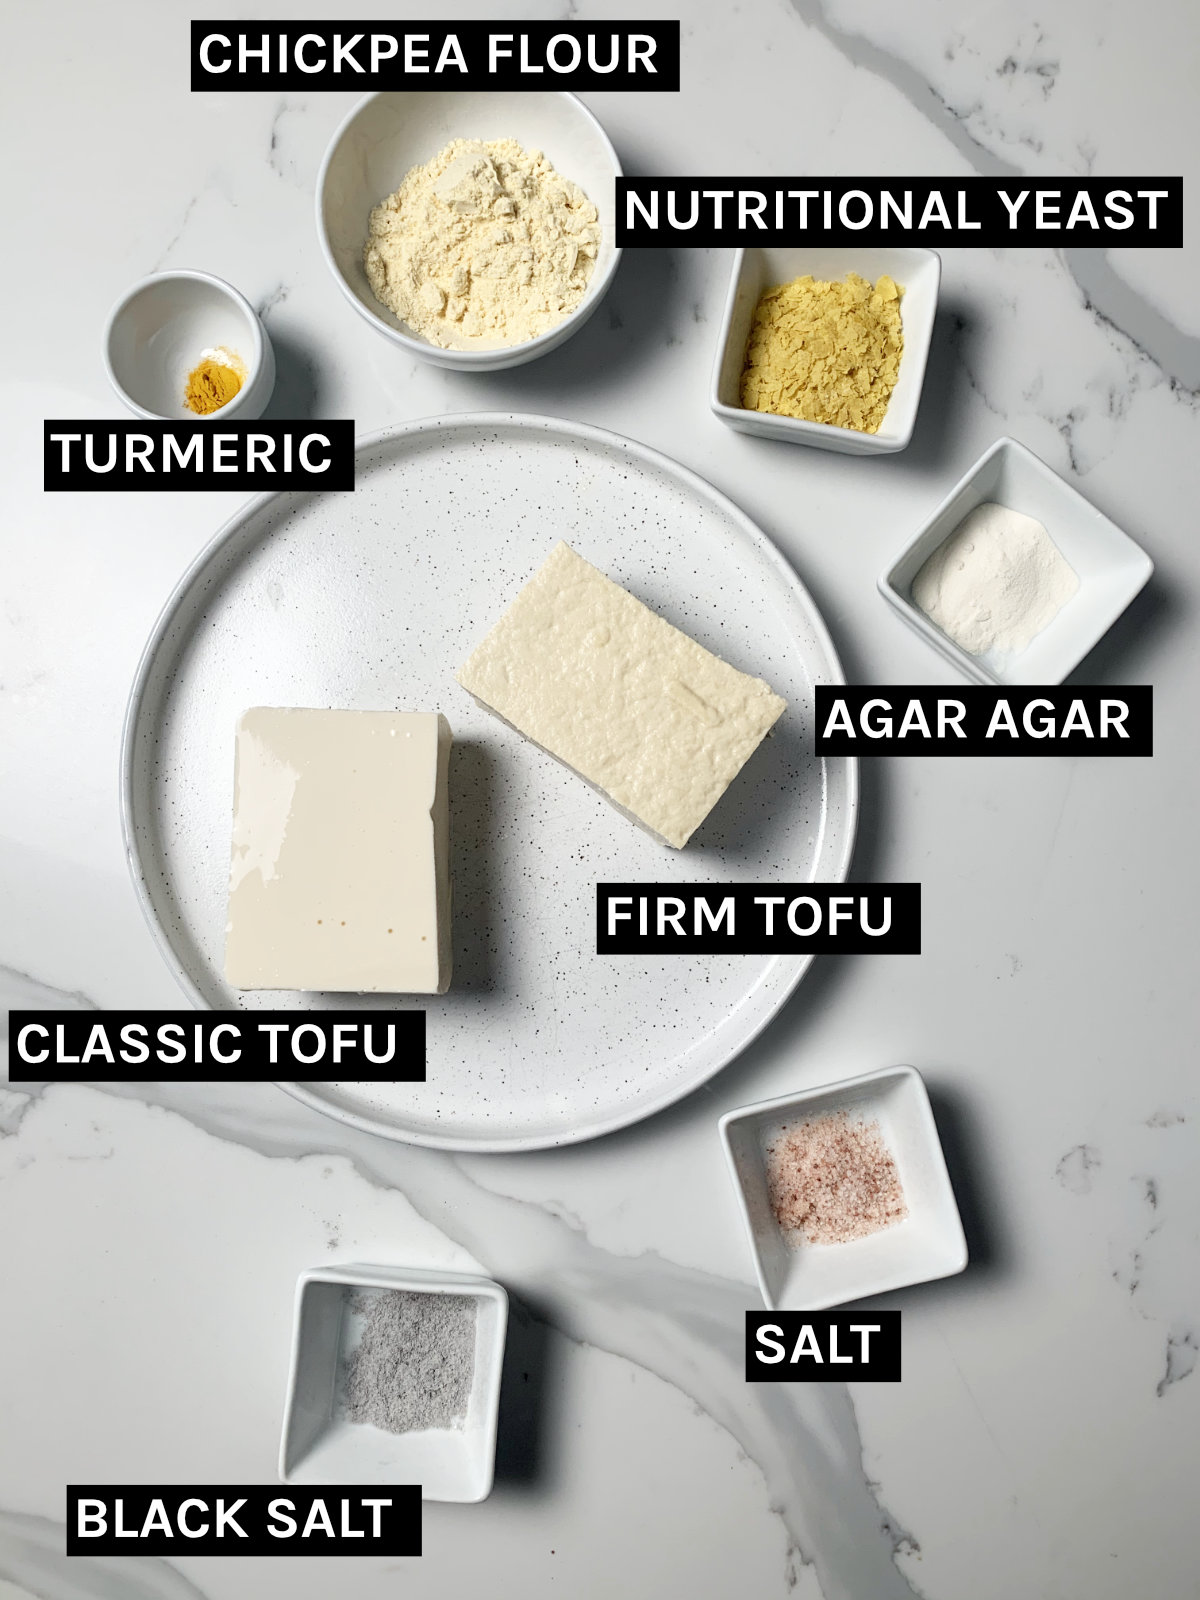 vegan scrambled egg inredients